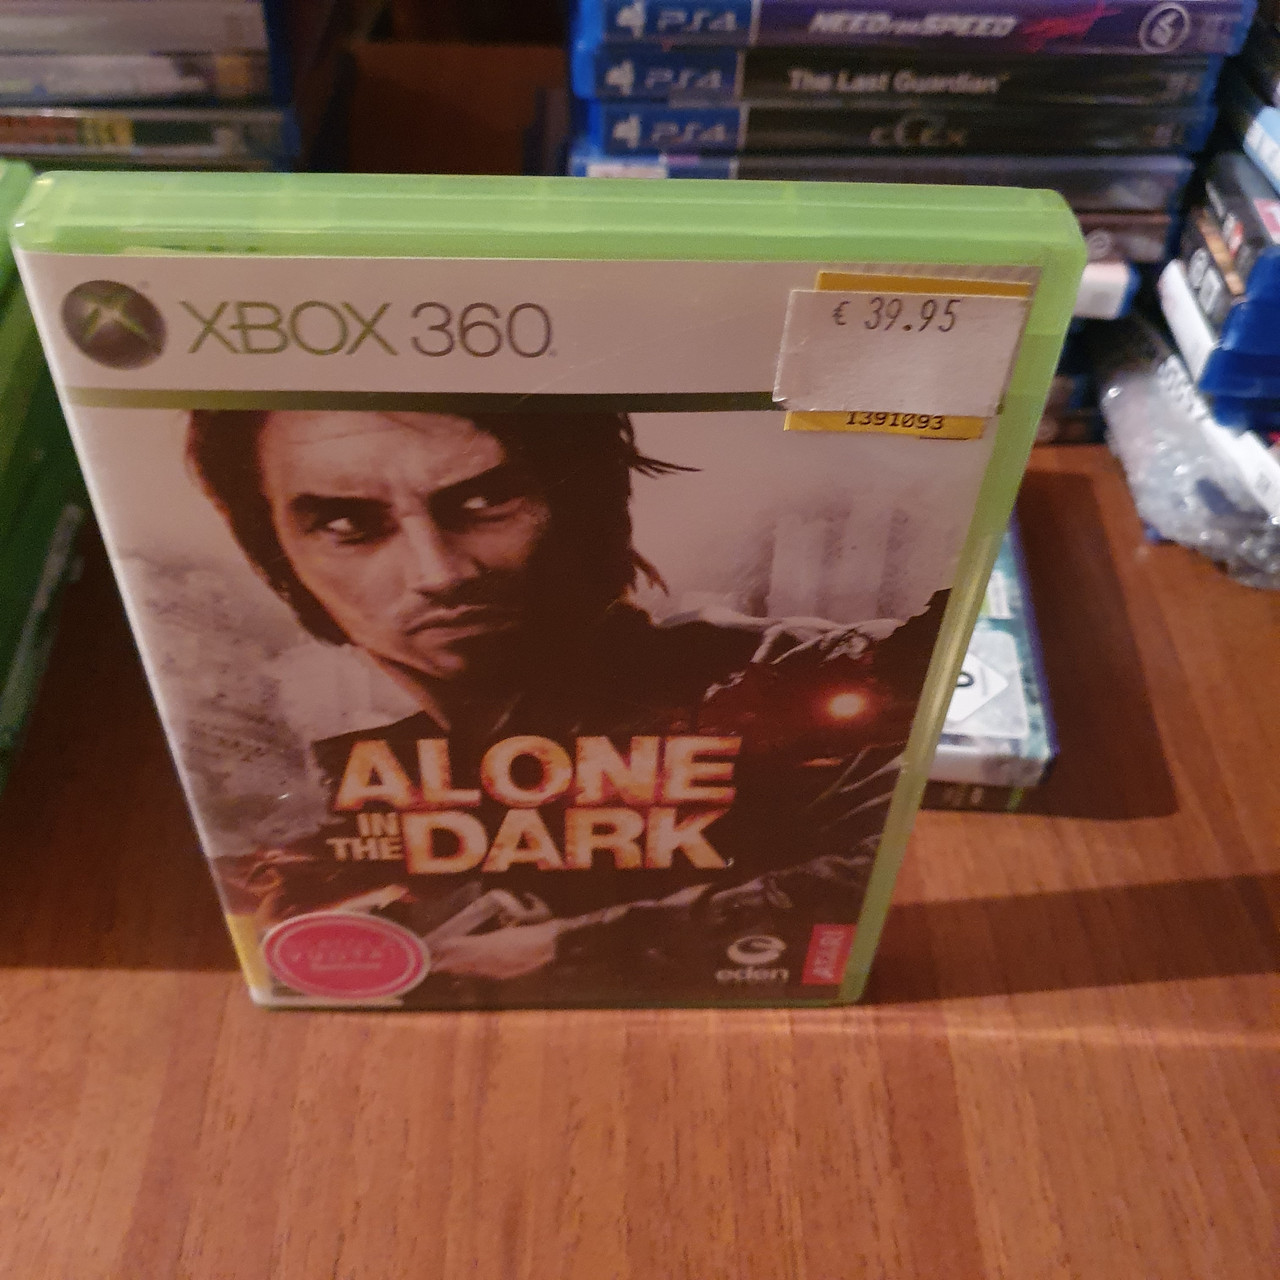 Alone in the Dark, Б/В, англійська версія - диск для Xbox 360